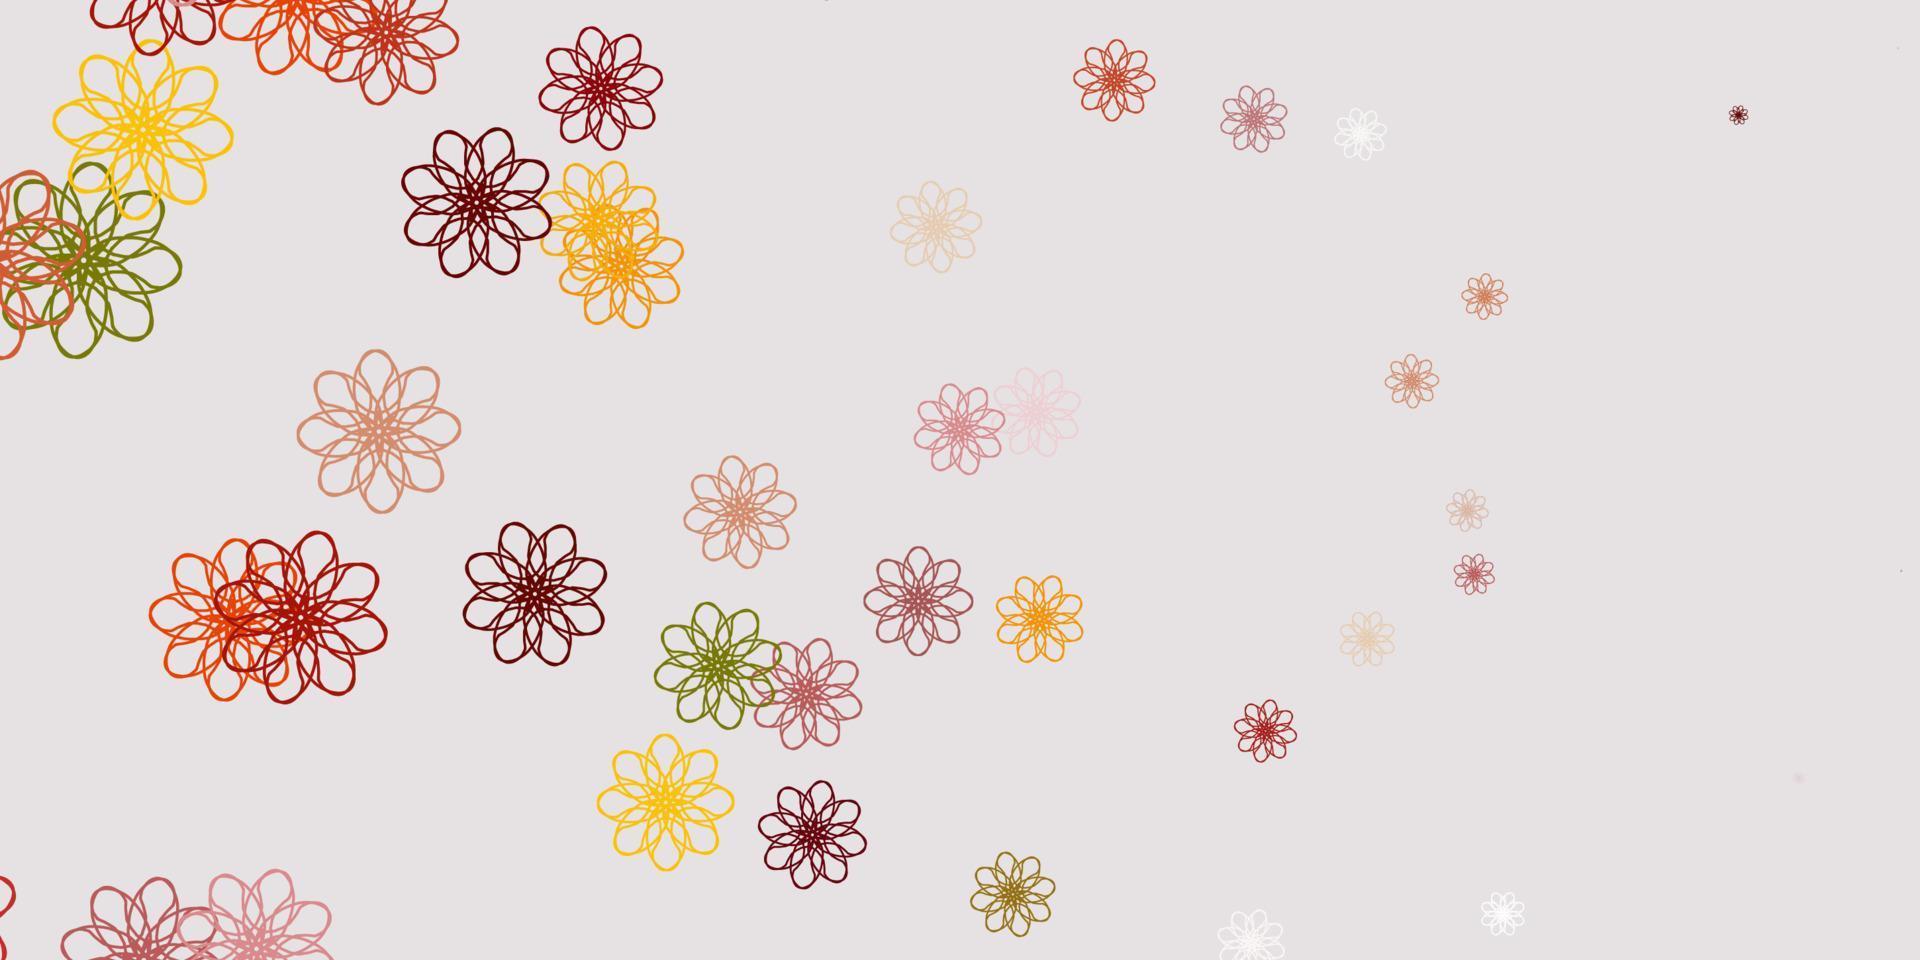 sfondo di doodle vettoriale rosso chiaro, giallo con fiori.